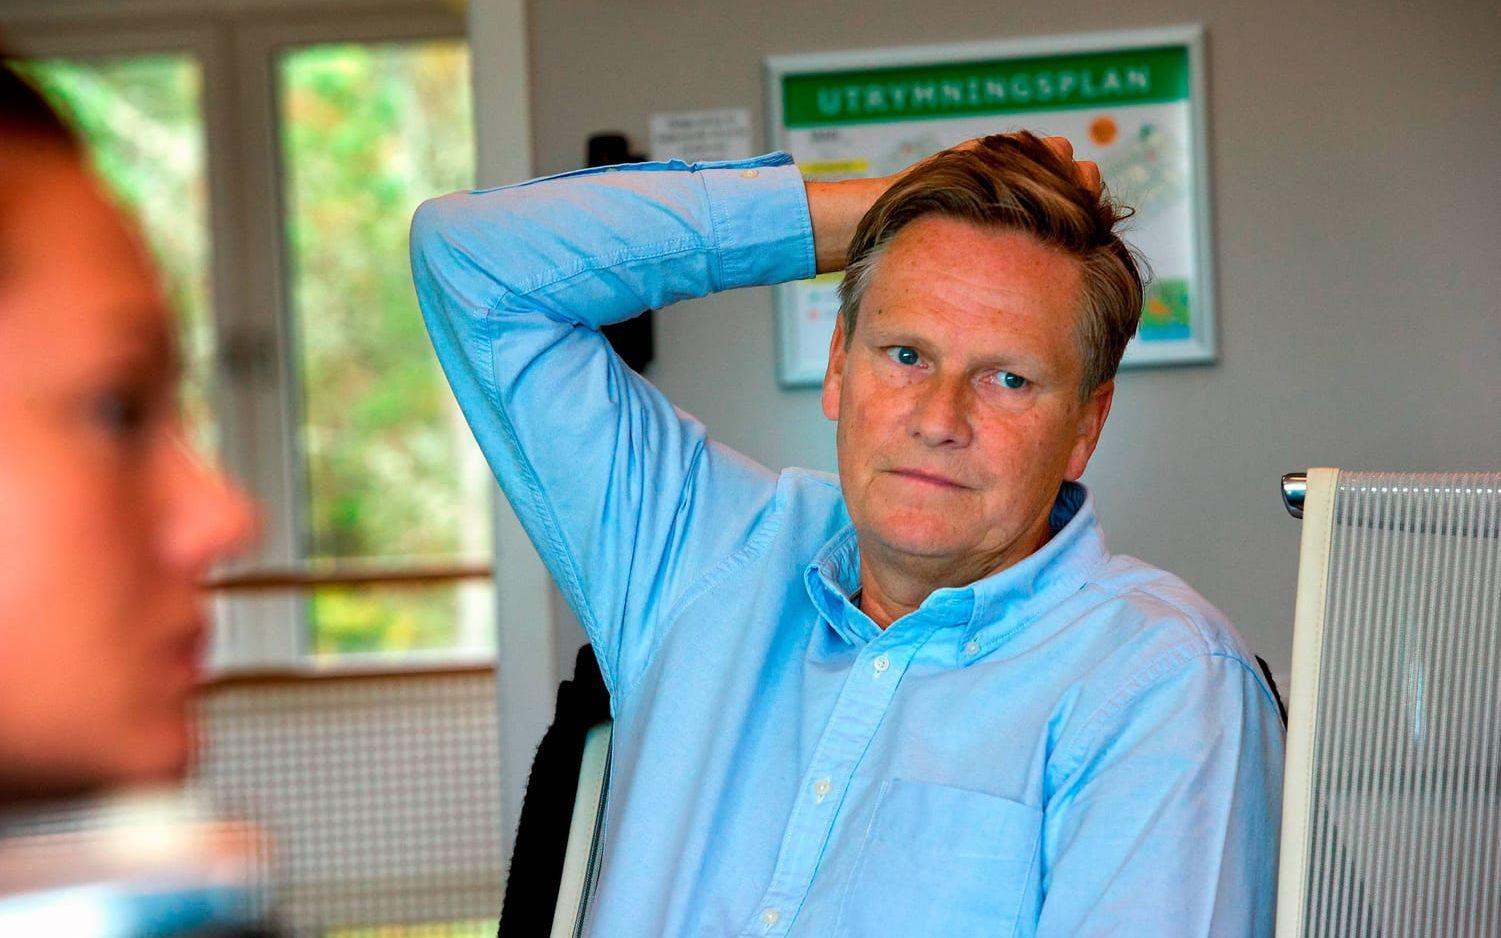 Jan Skoglund är direktör på både Vann och Smögens hafvsbad. Foto: Lasse Edwartz